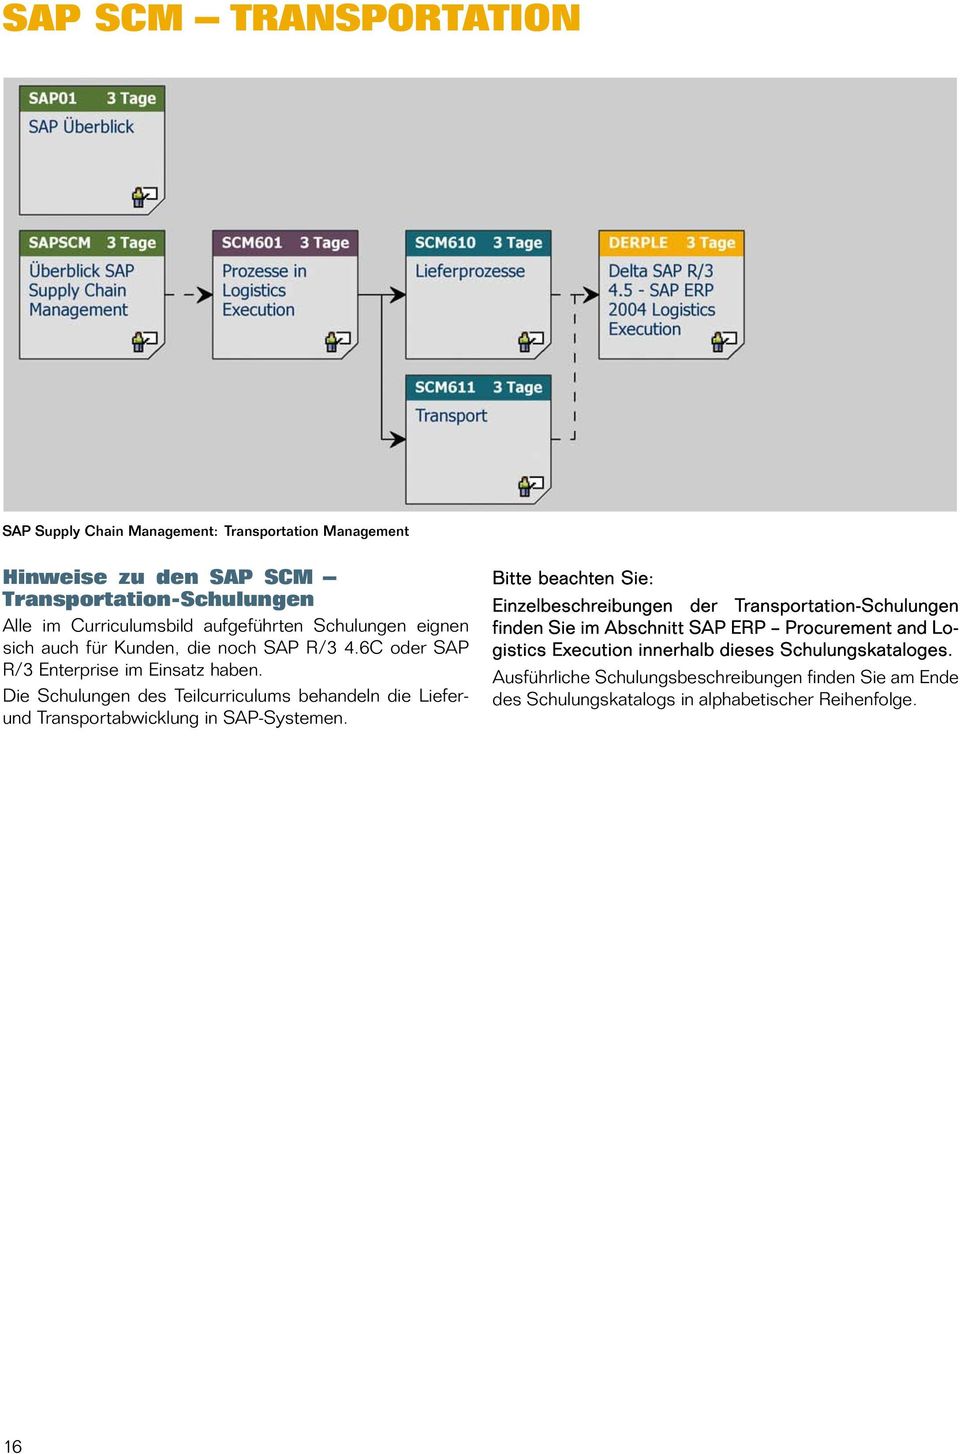 Die Schulungen des Teilcurriculums behandeln die Lieferund Transportabwicklung in SAP-Systemen.